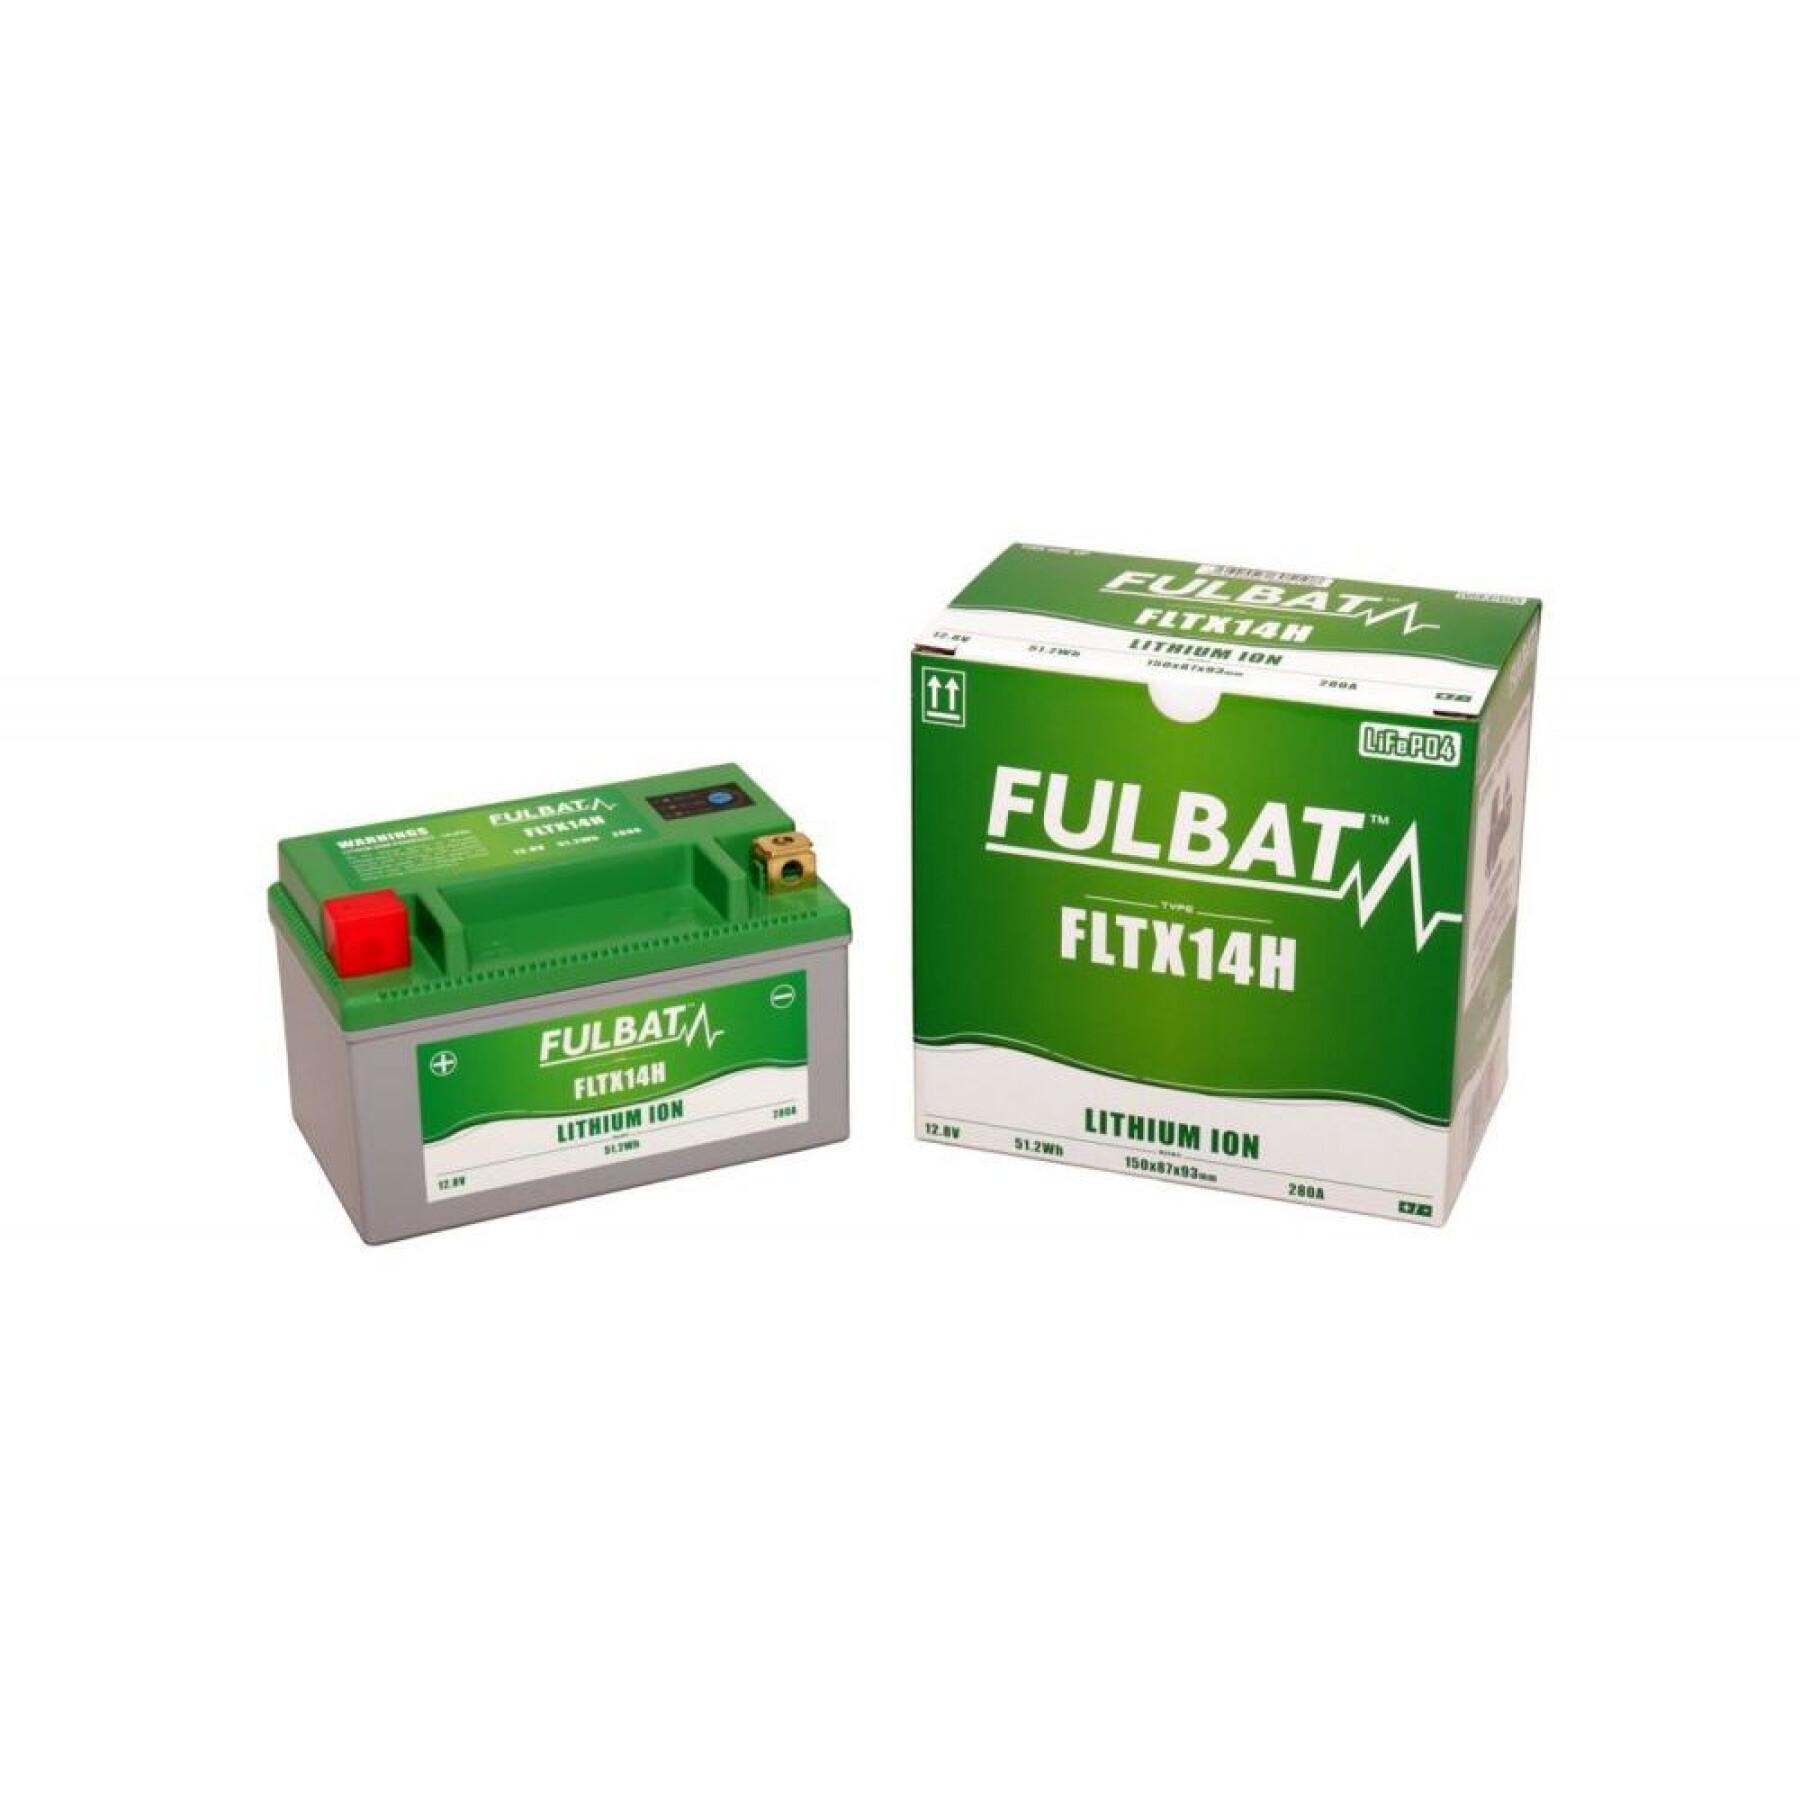 Batteria Fulbat FLTX14H Lithium 560625